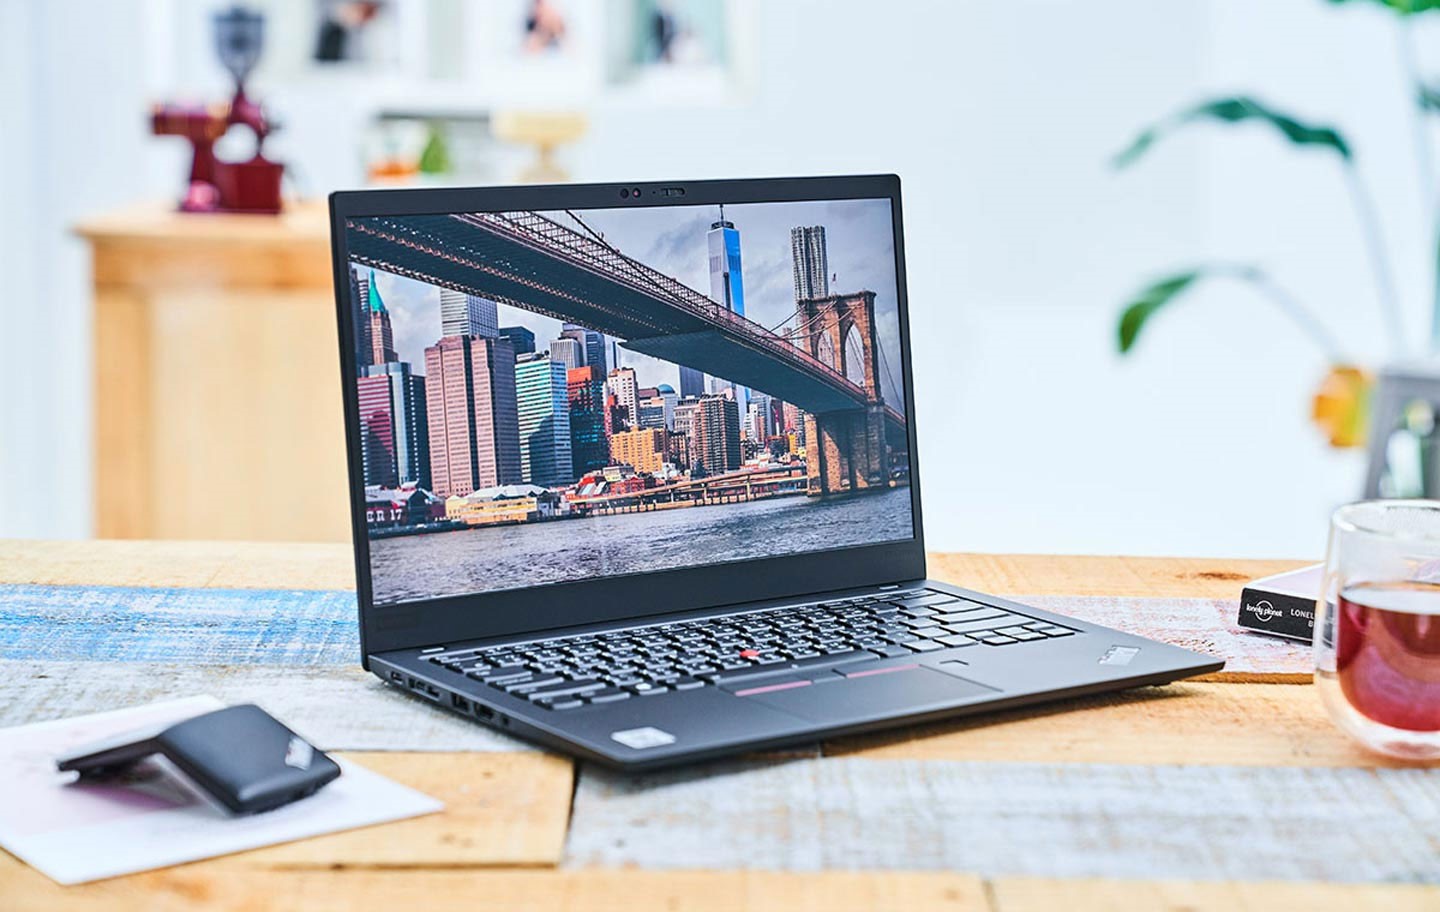 ThinkPad X1 Carbon 樹立了商務電極致輕薄卻有兼具高效能的旗艦風範。